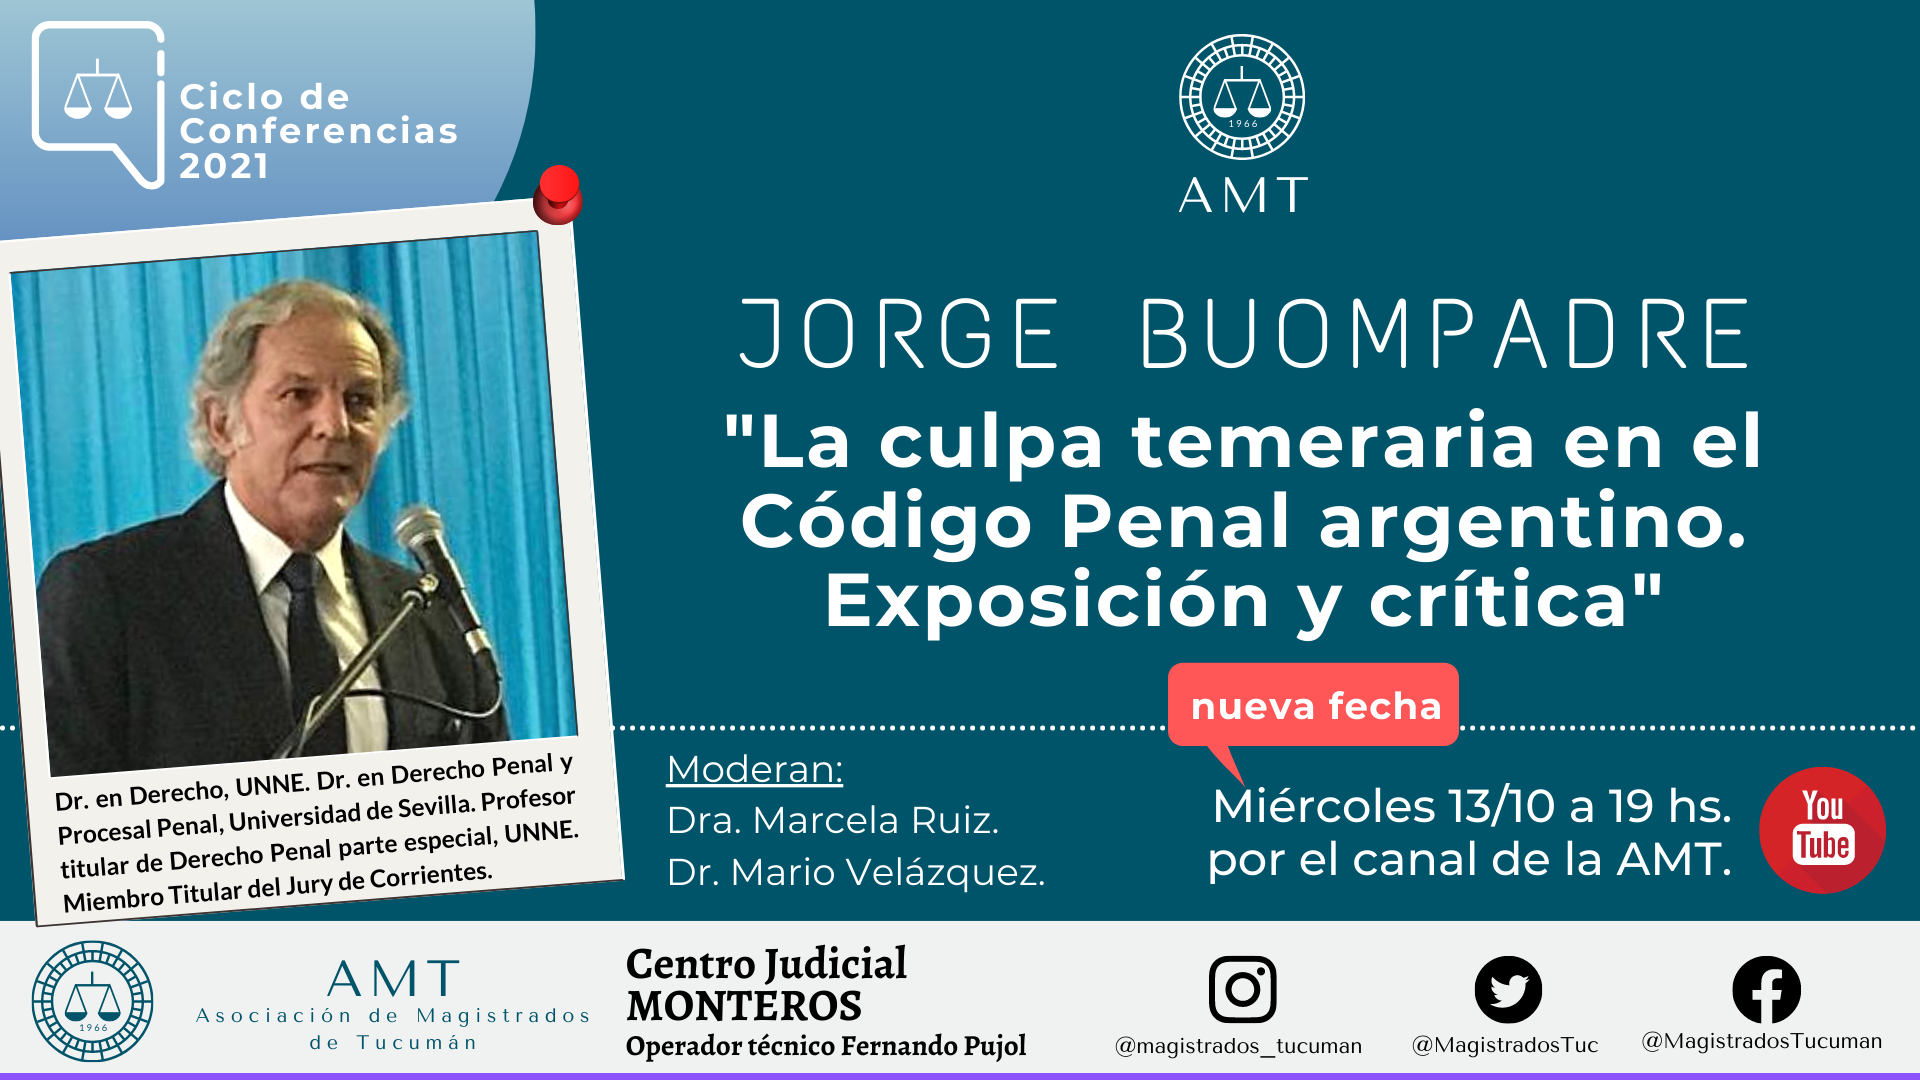 Vuelva a ver la conferencia de Jorge Buompadre «La culpa temeraria en el Código Penal argentino»